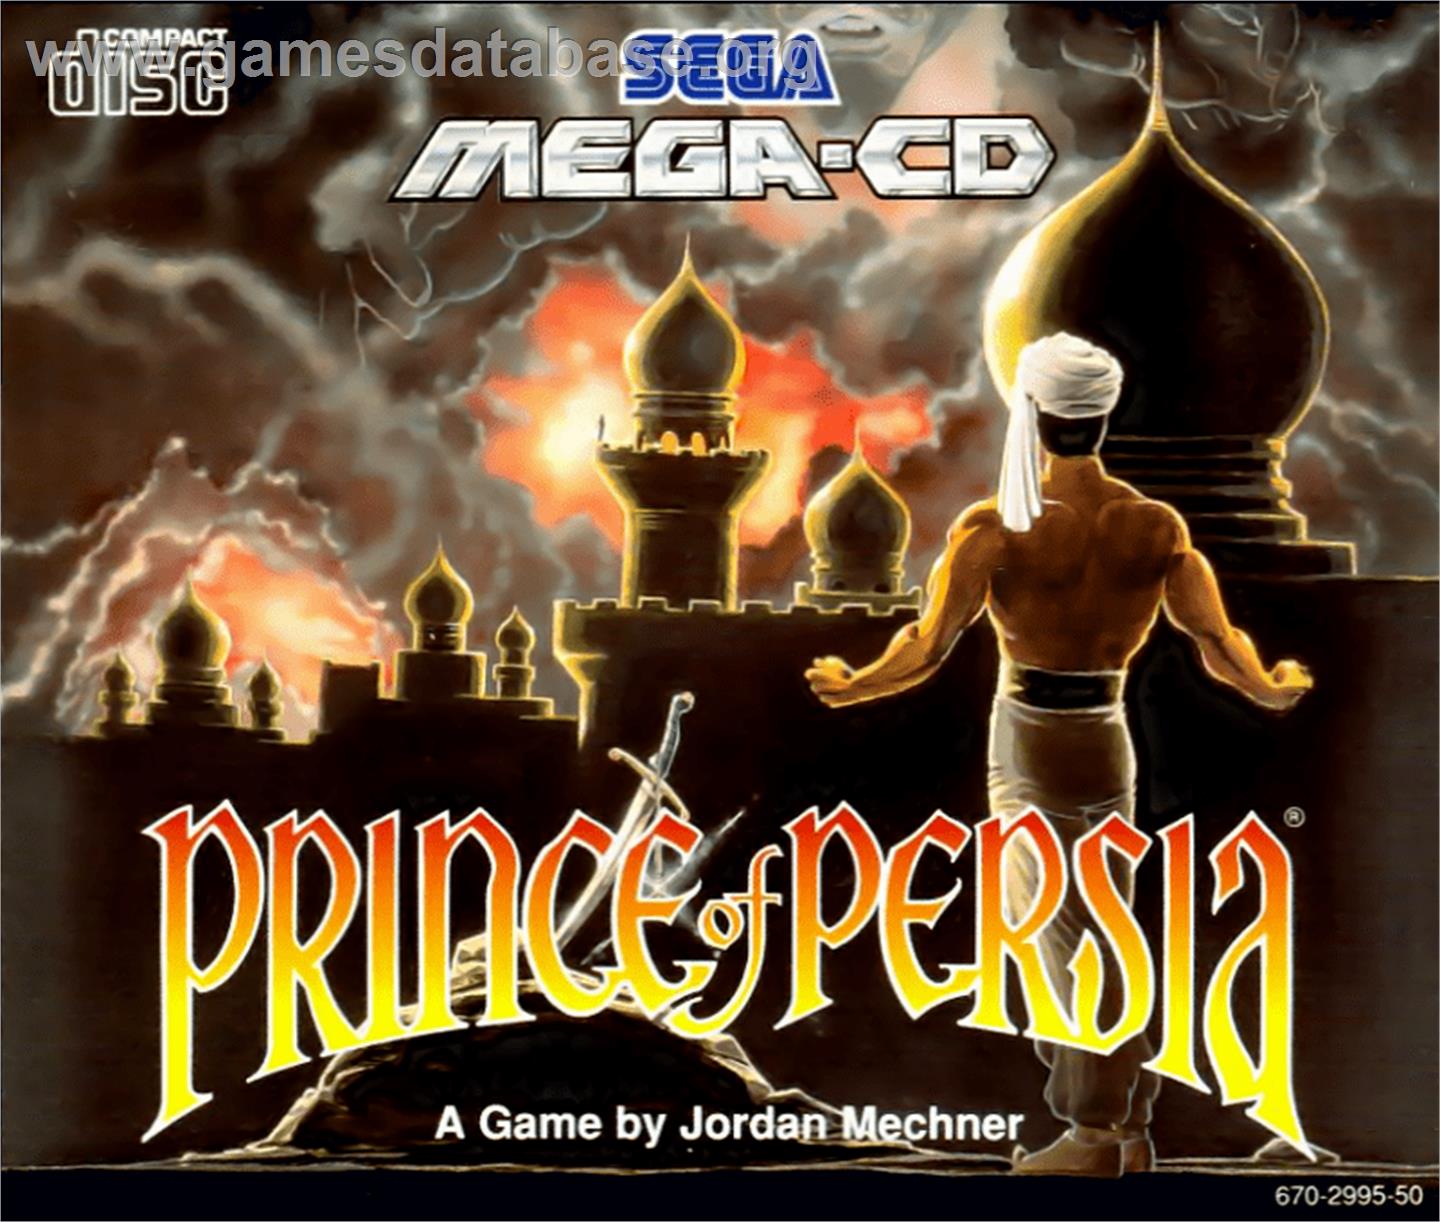 Prince of Persia - Sega CD - Artwork - Box